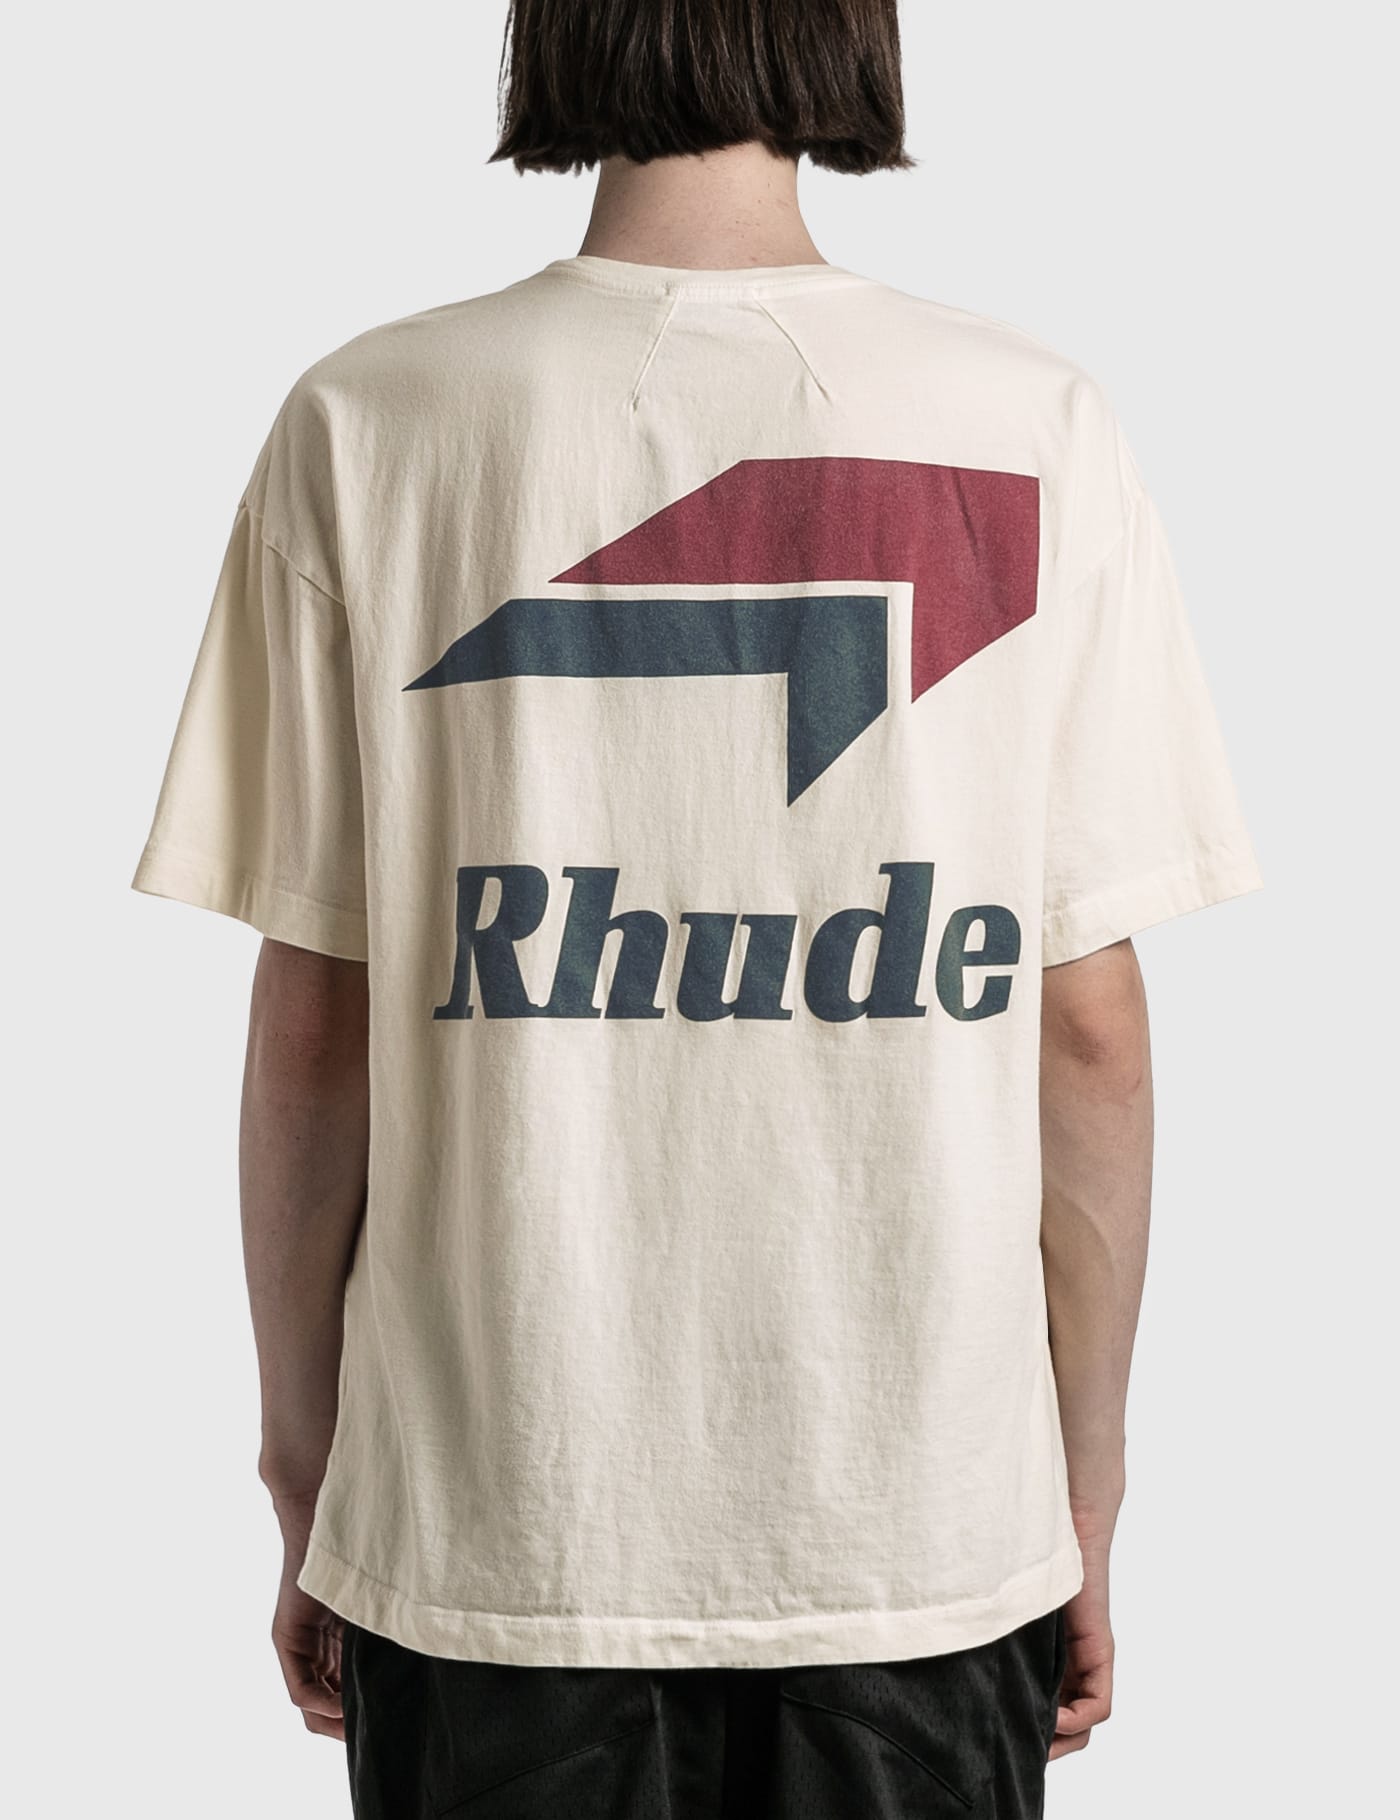 Rhude   ロゴ Tシャツ   HBX   ハイプビーストHypebeastが厳選した